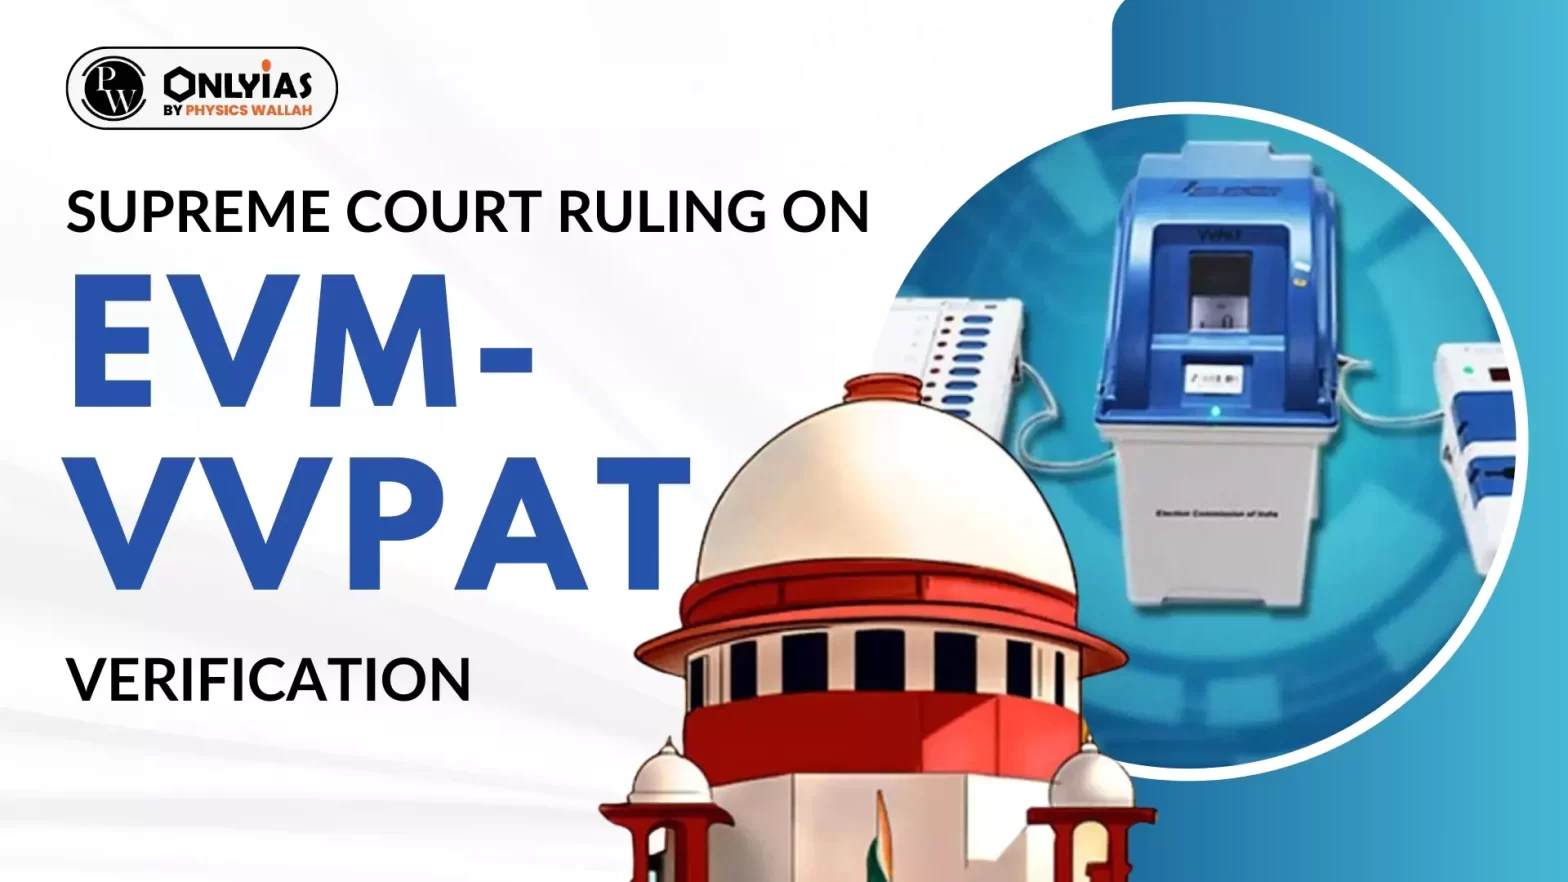 Supreme Court Ruling on EVM-VVPAT Verification